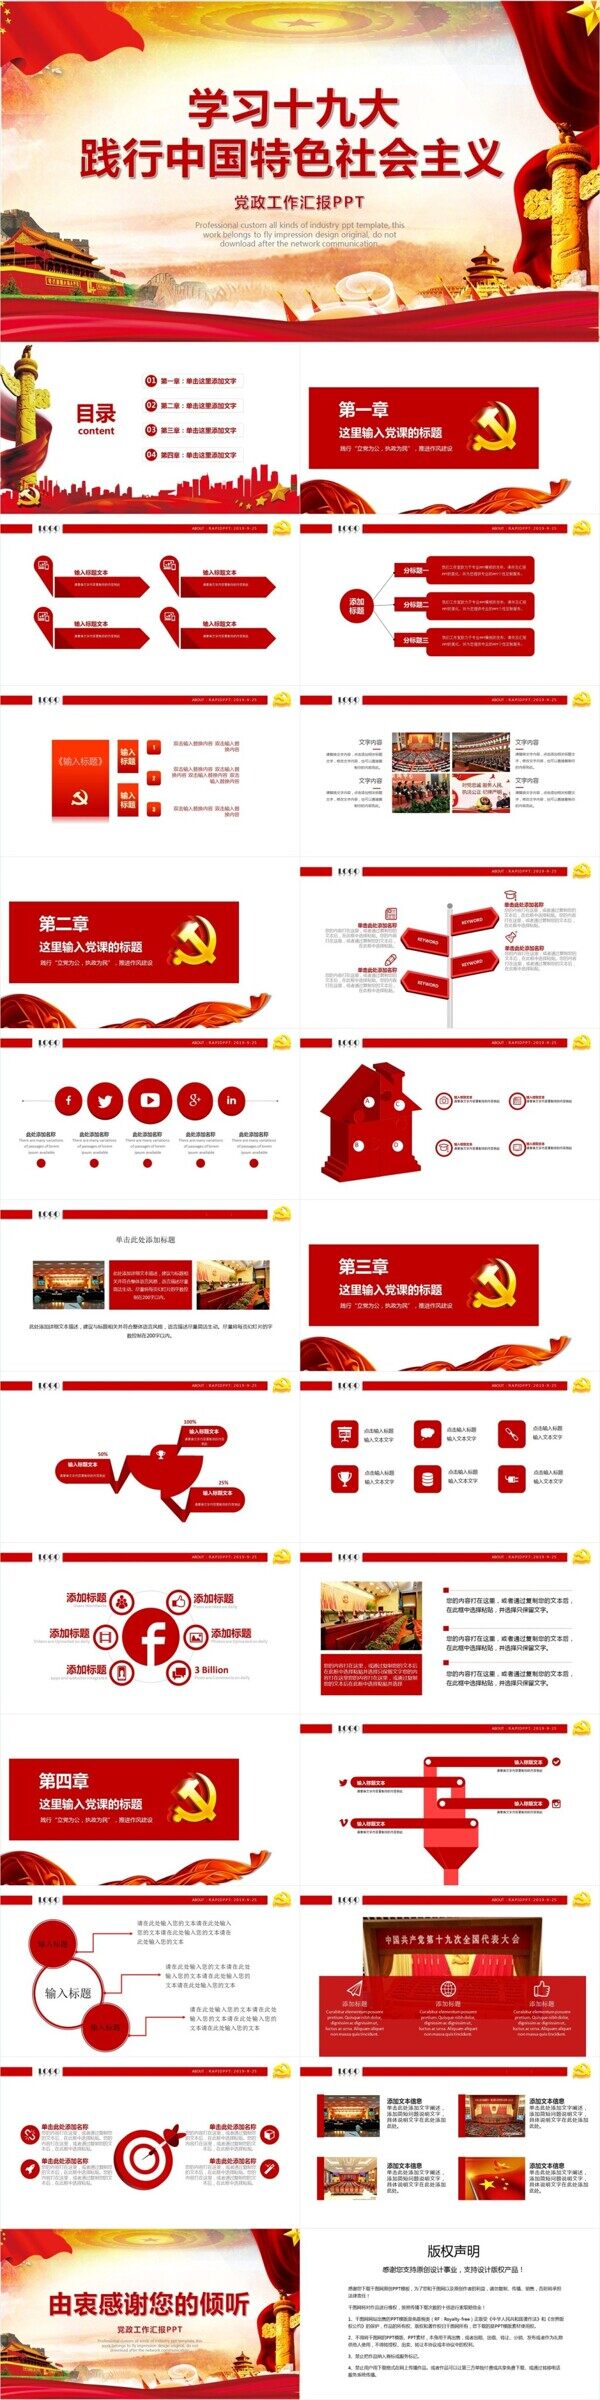 学习践行中国特色社会主义PPT模板